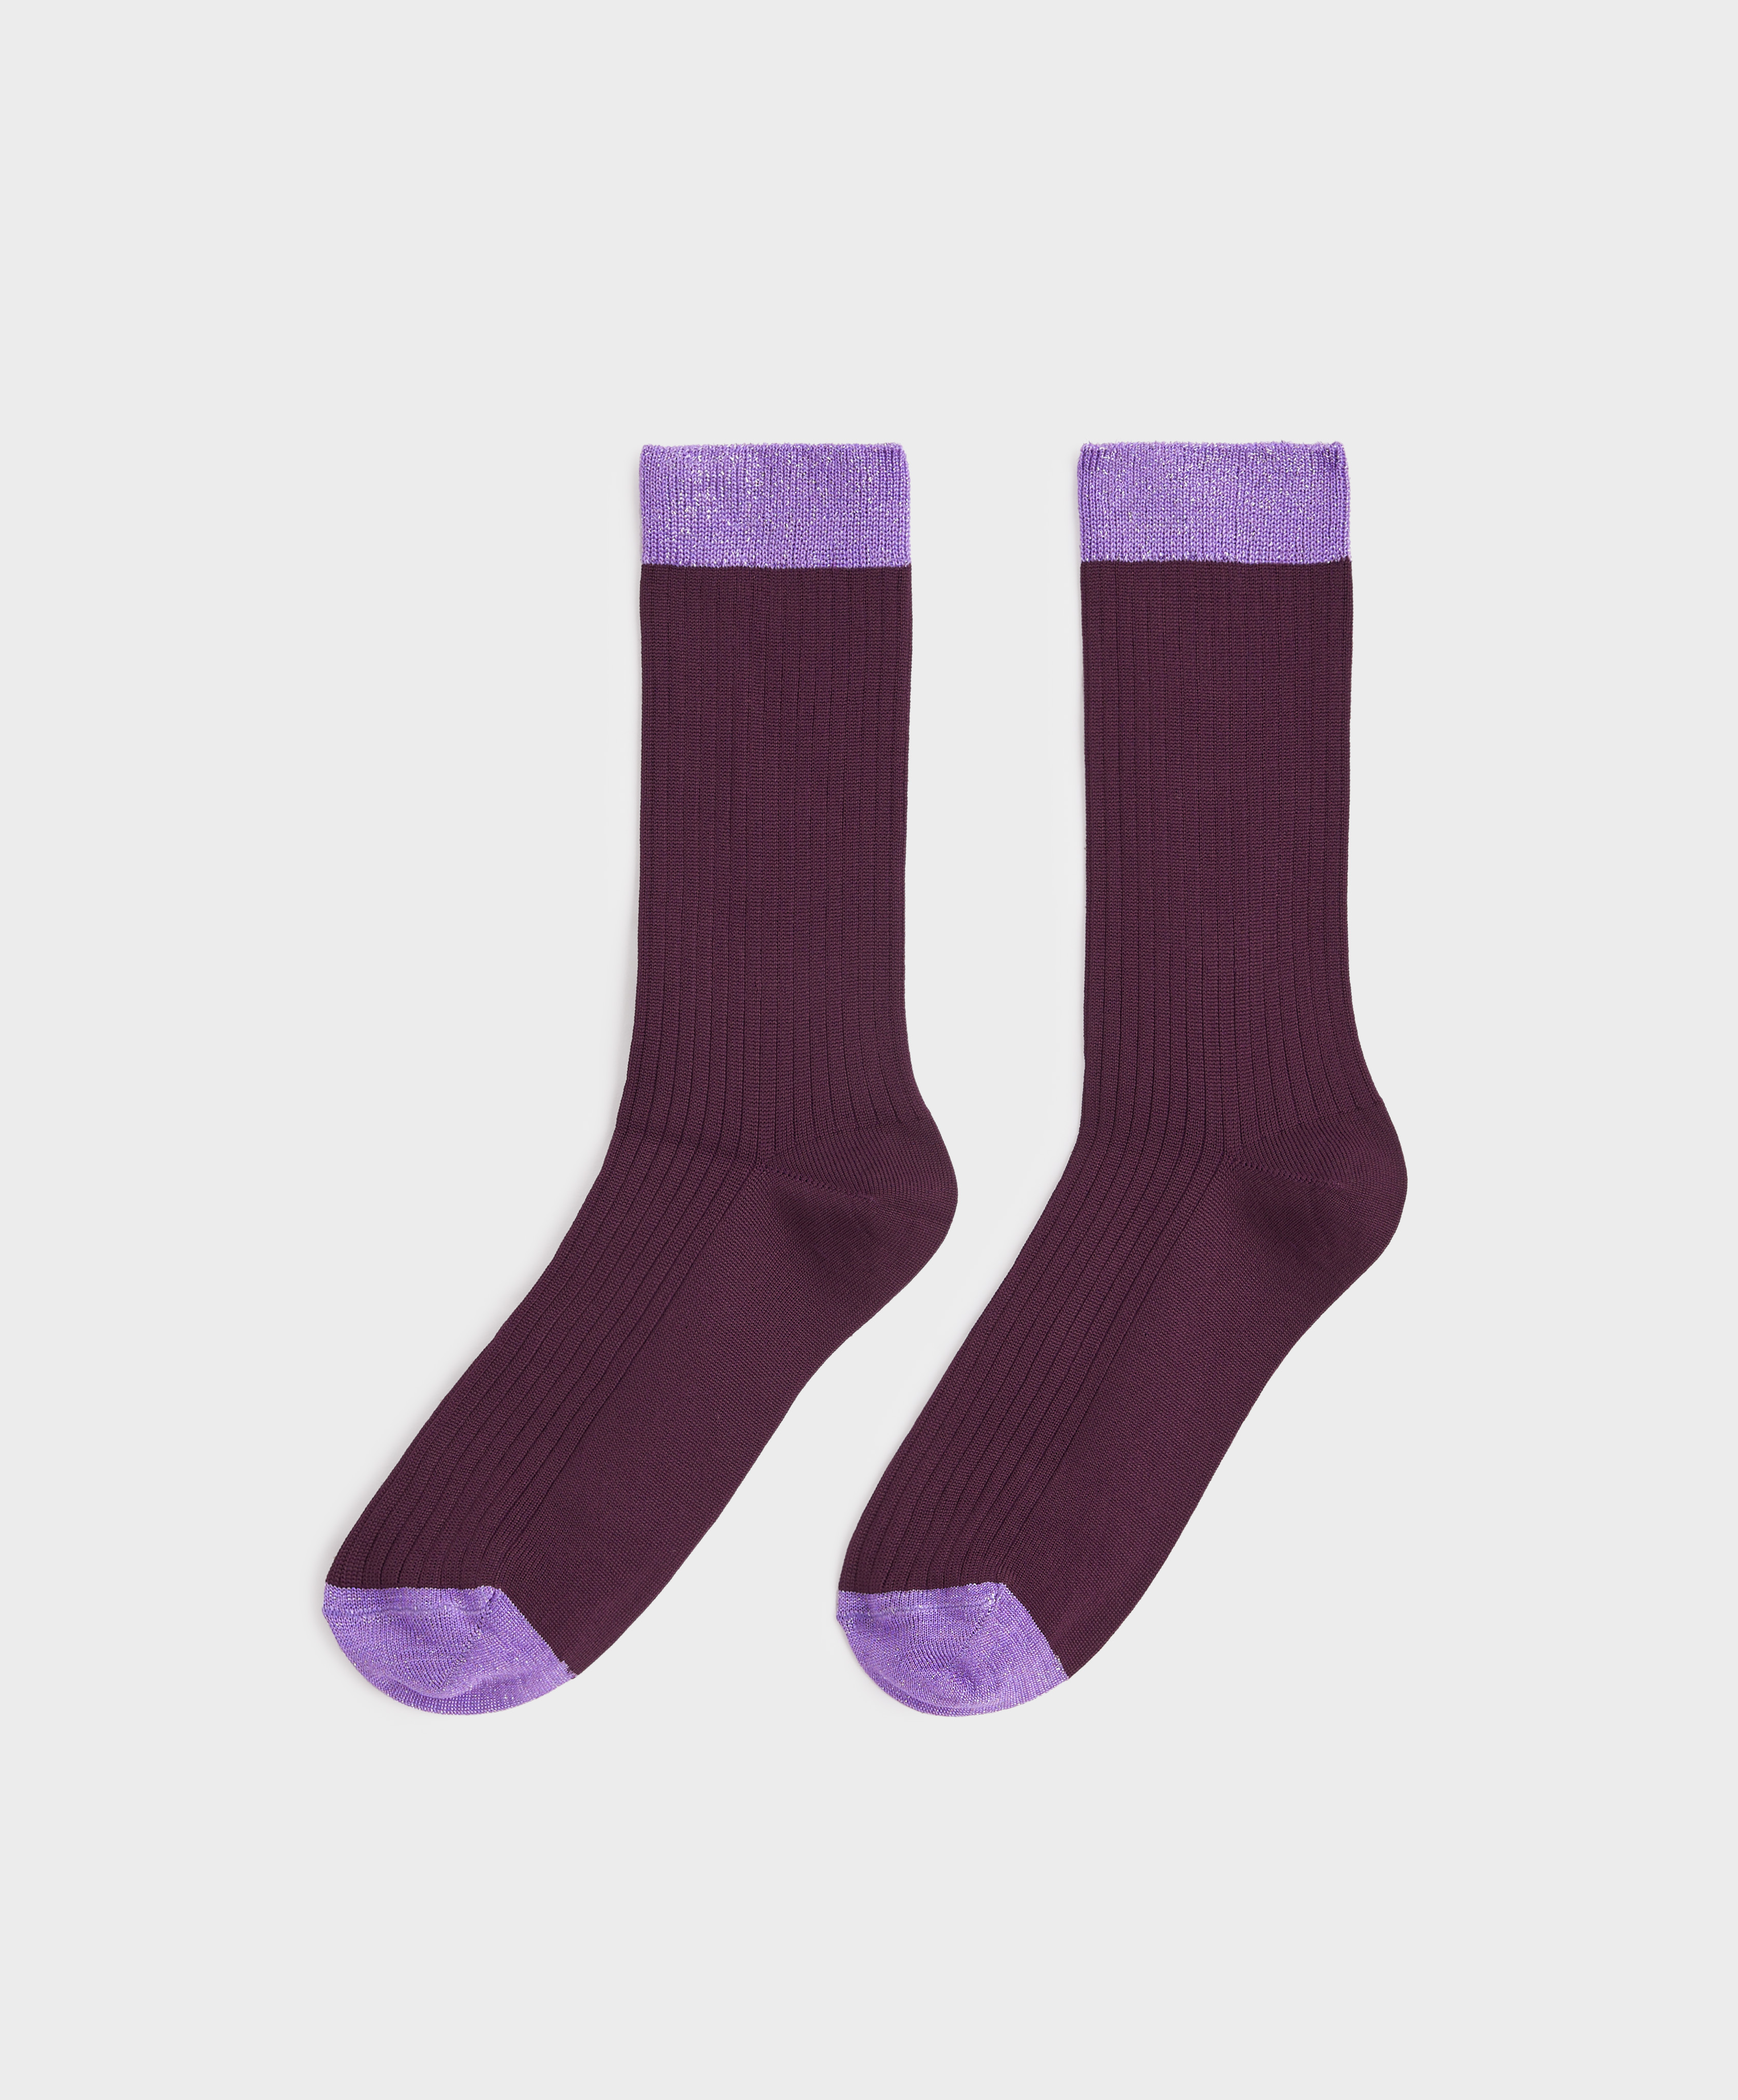 Viscose classic socks